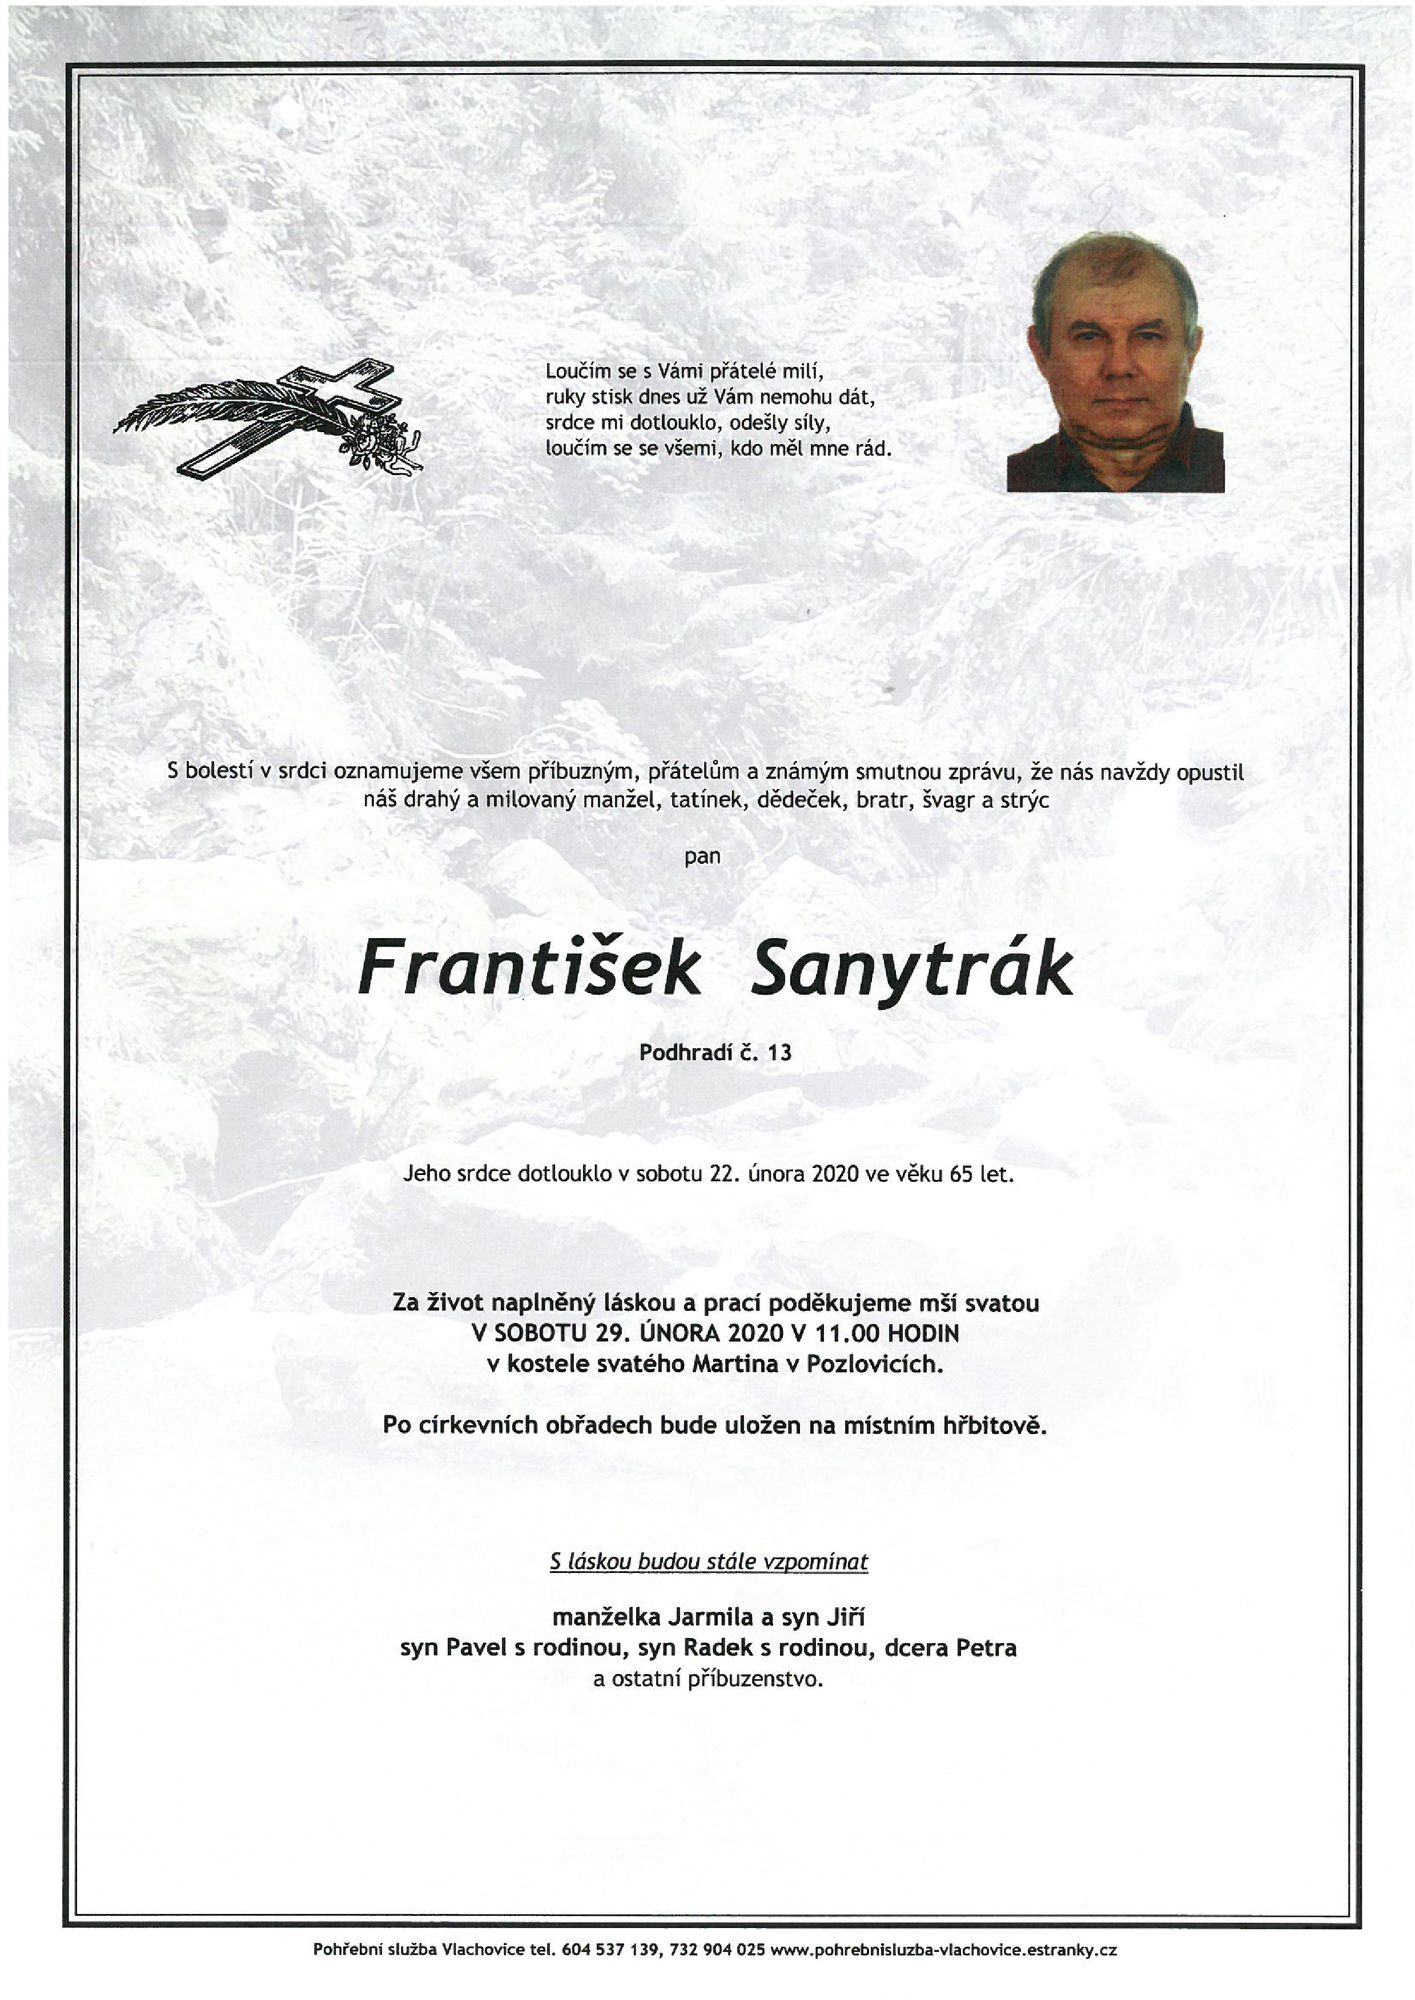 František Sanytrák